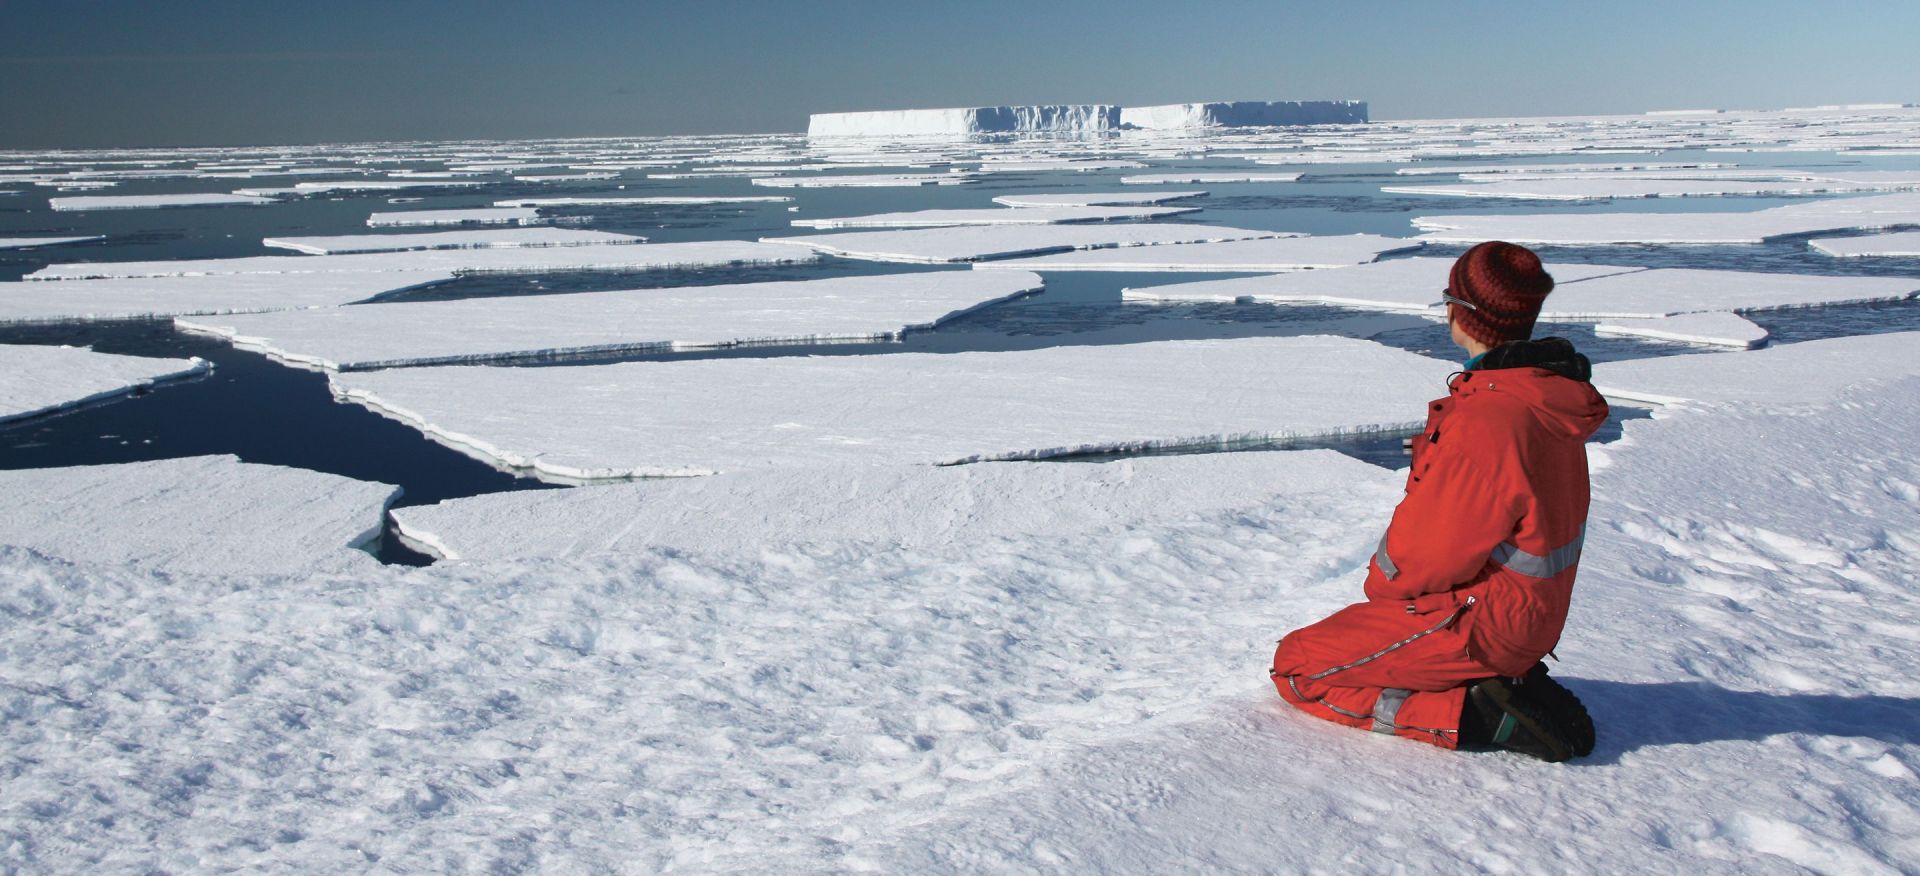 Header Ueberleben In Der Antarktis Ksw Storys